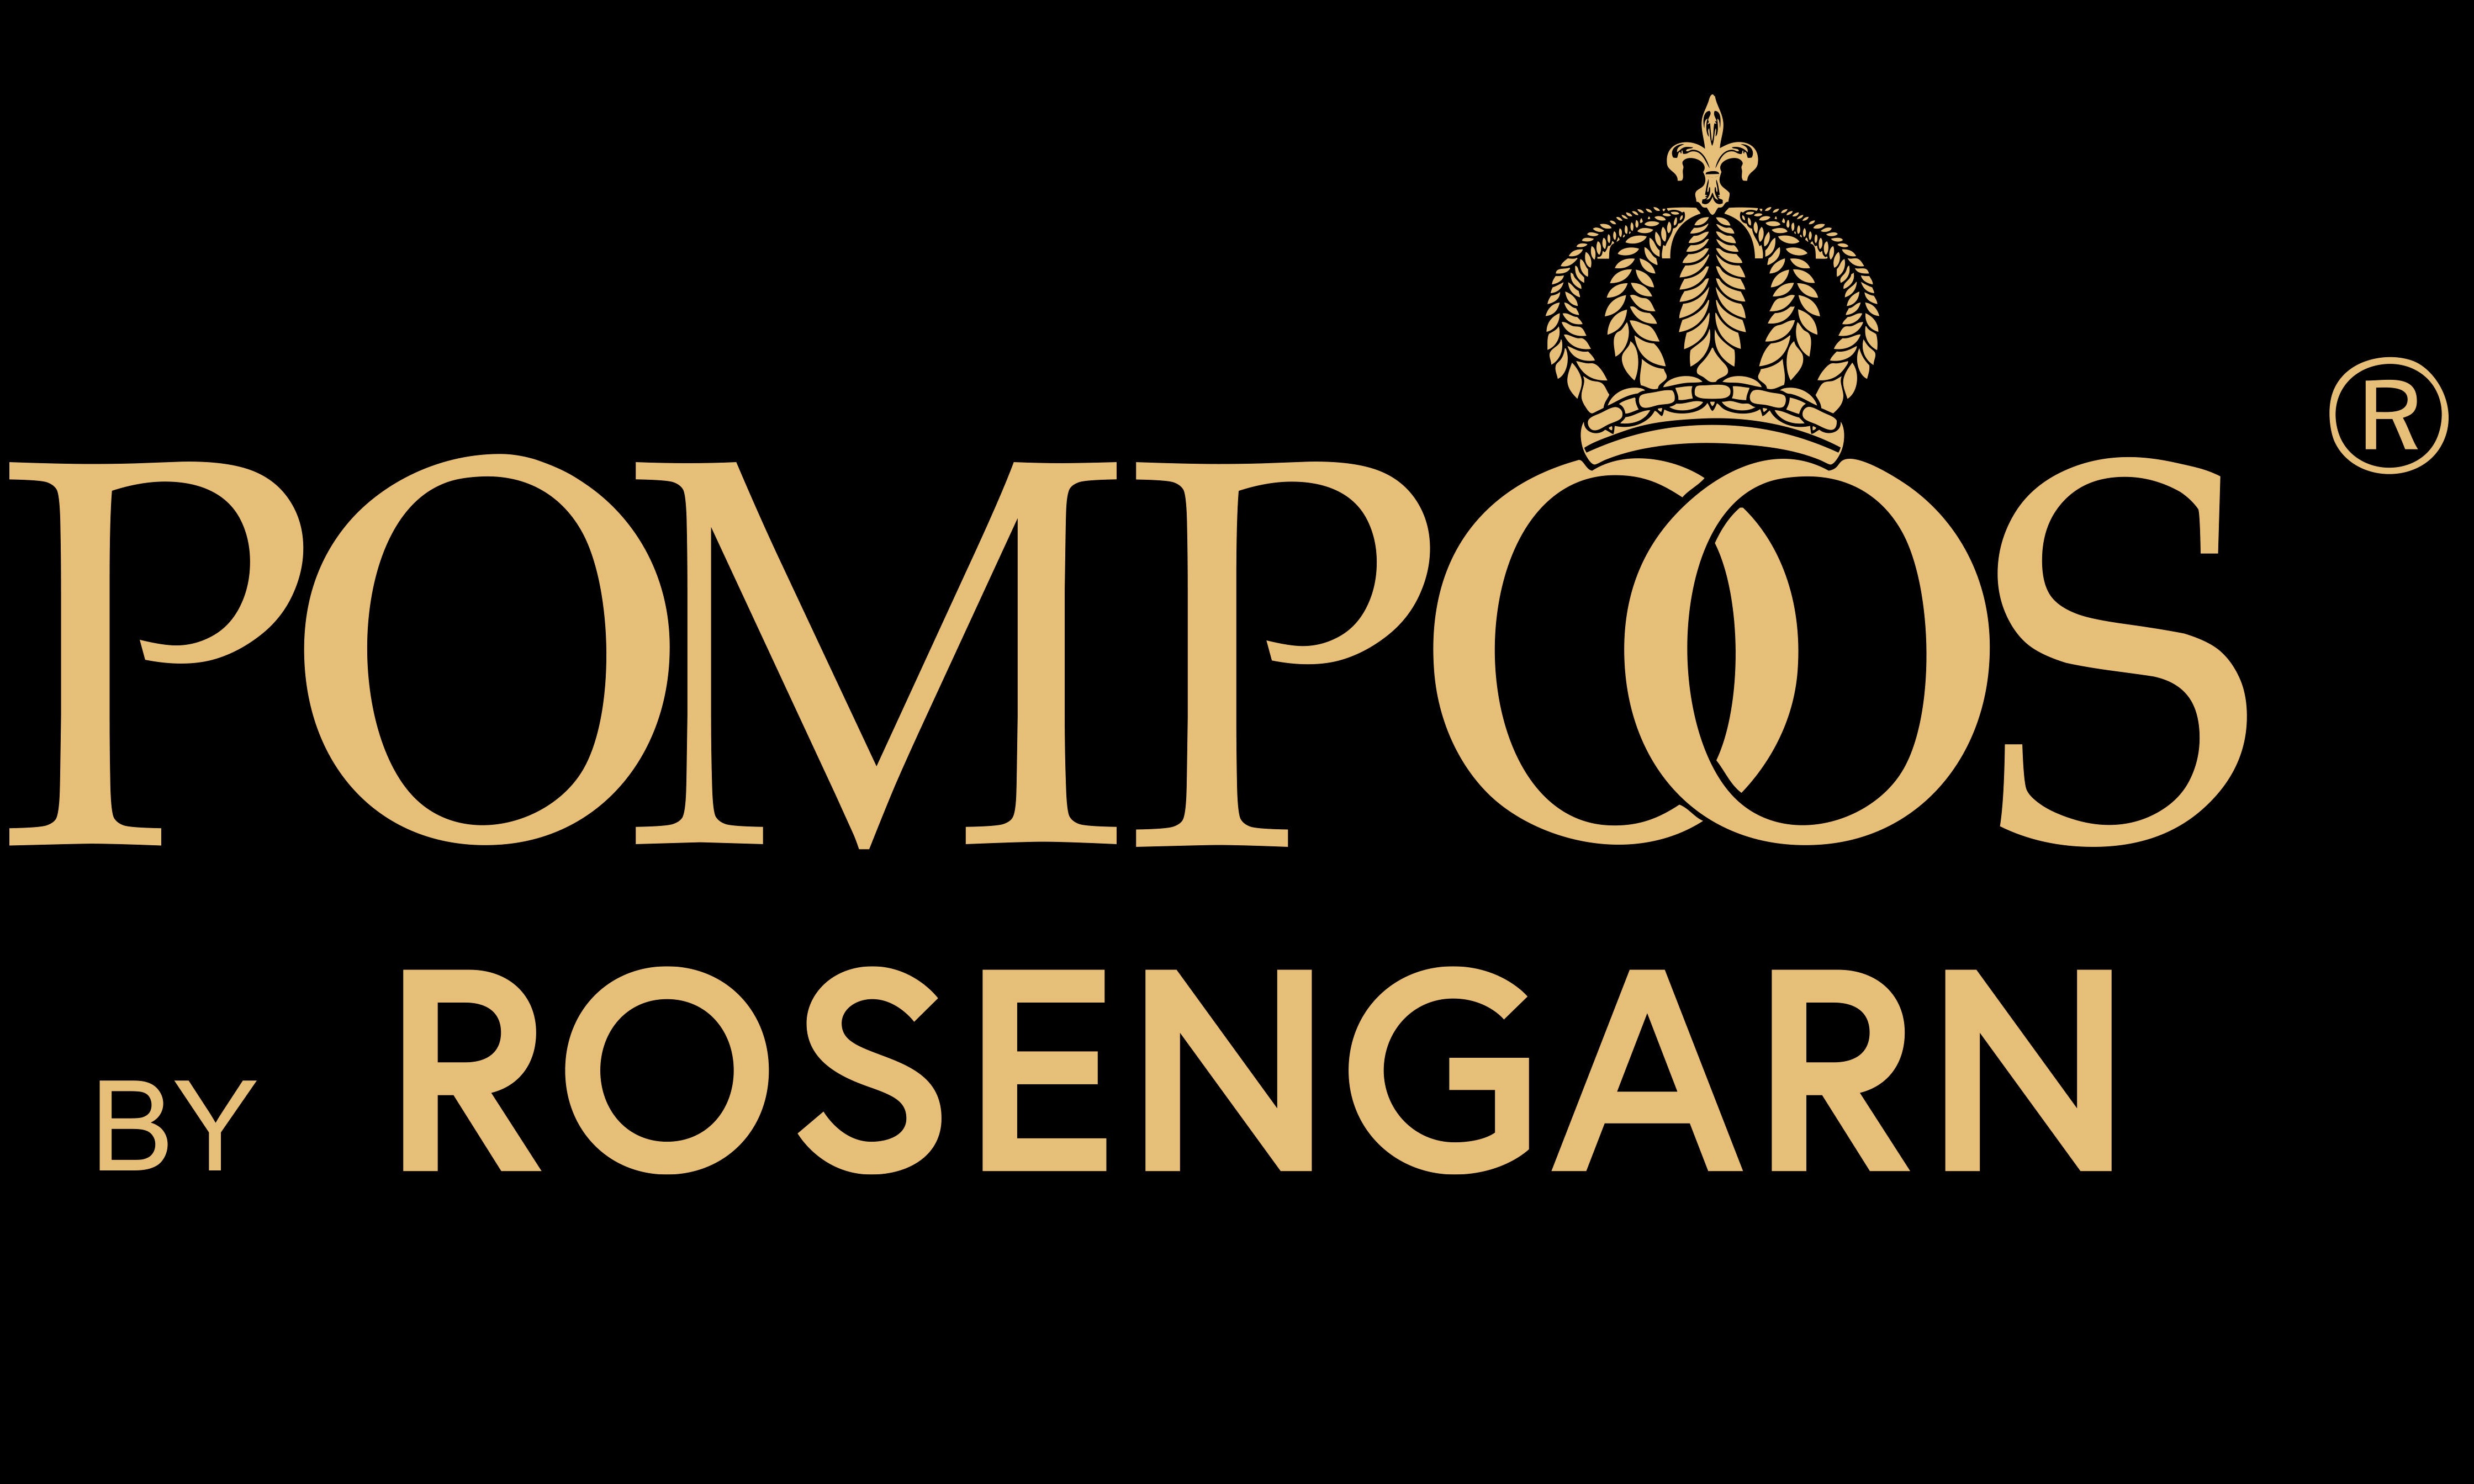 Rosengarn goes Pompöös!